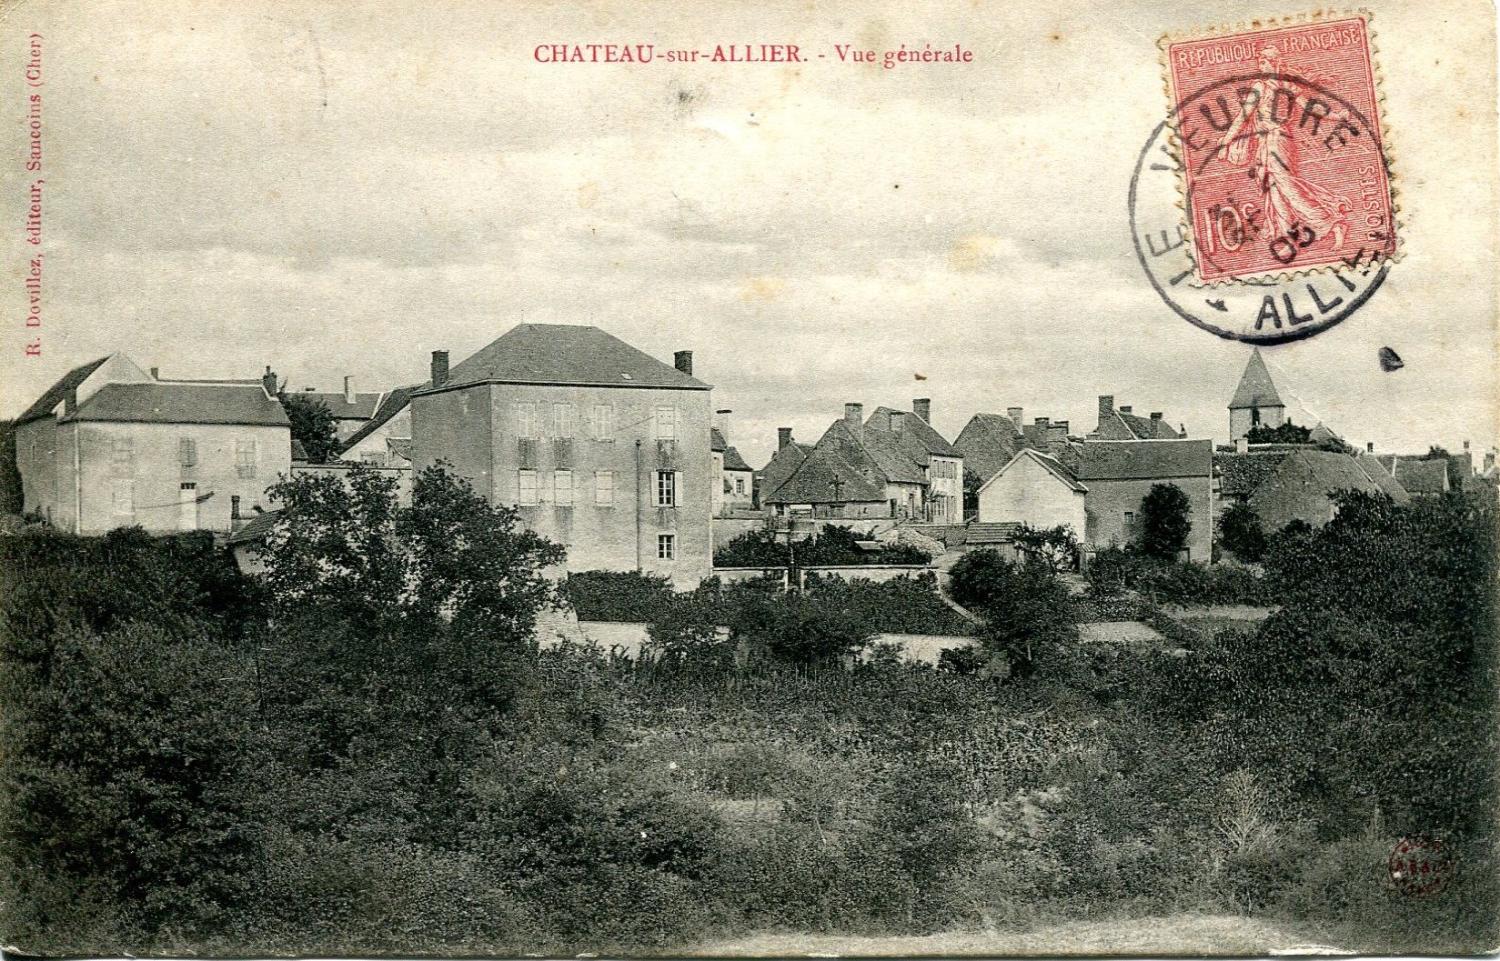 Carte postale : Château-sur-Allier, vers 1905.